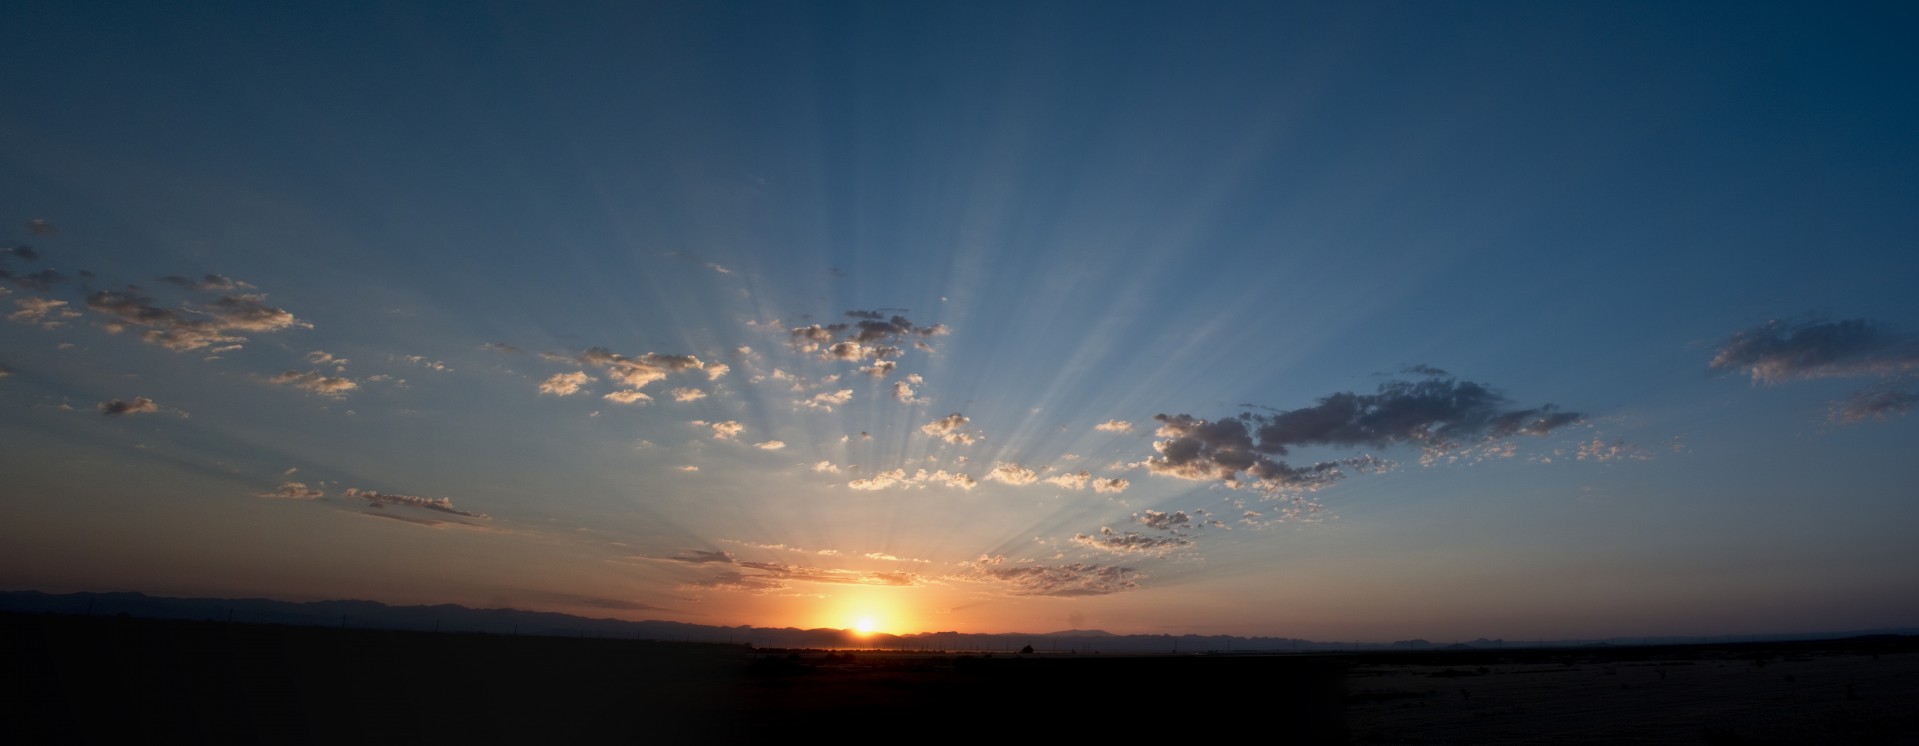 arizona sunrise light free photo